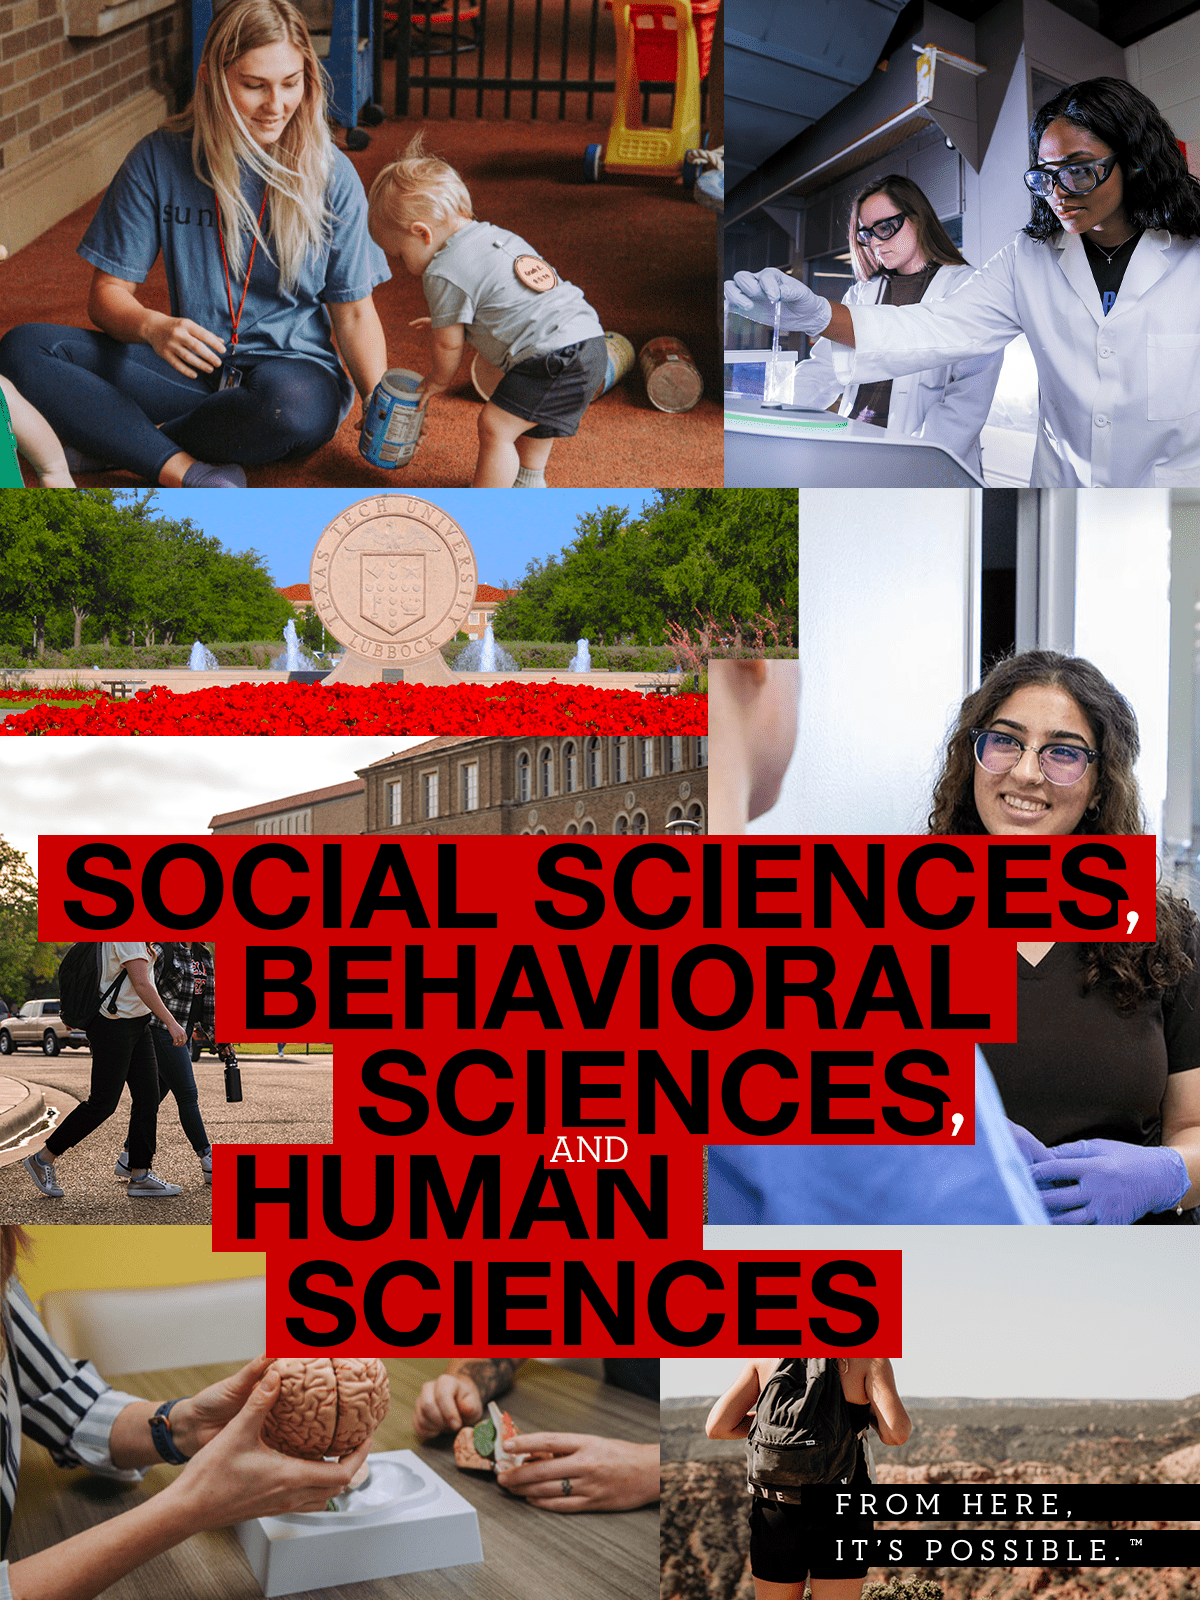 Social Sciences, Behavioral Sciences and Human Sciences